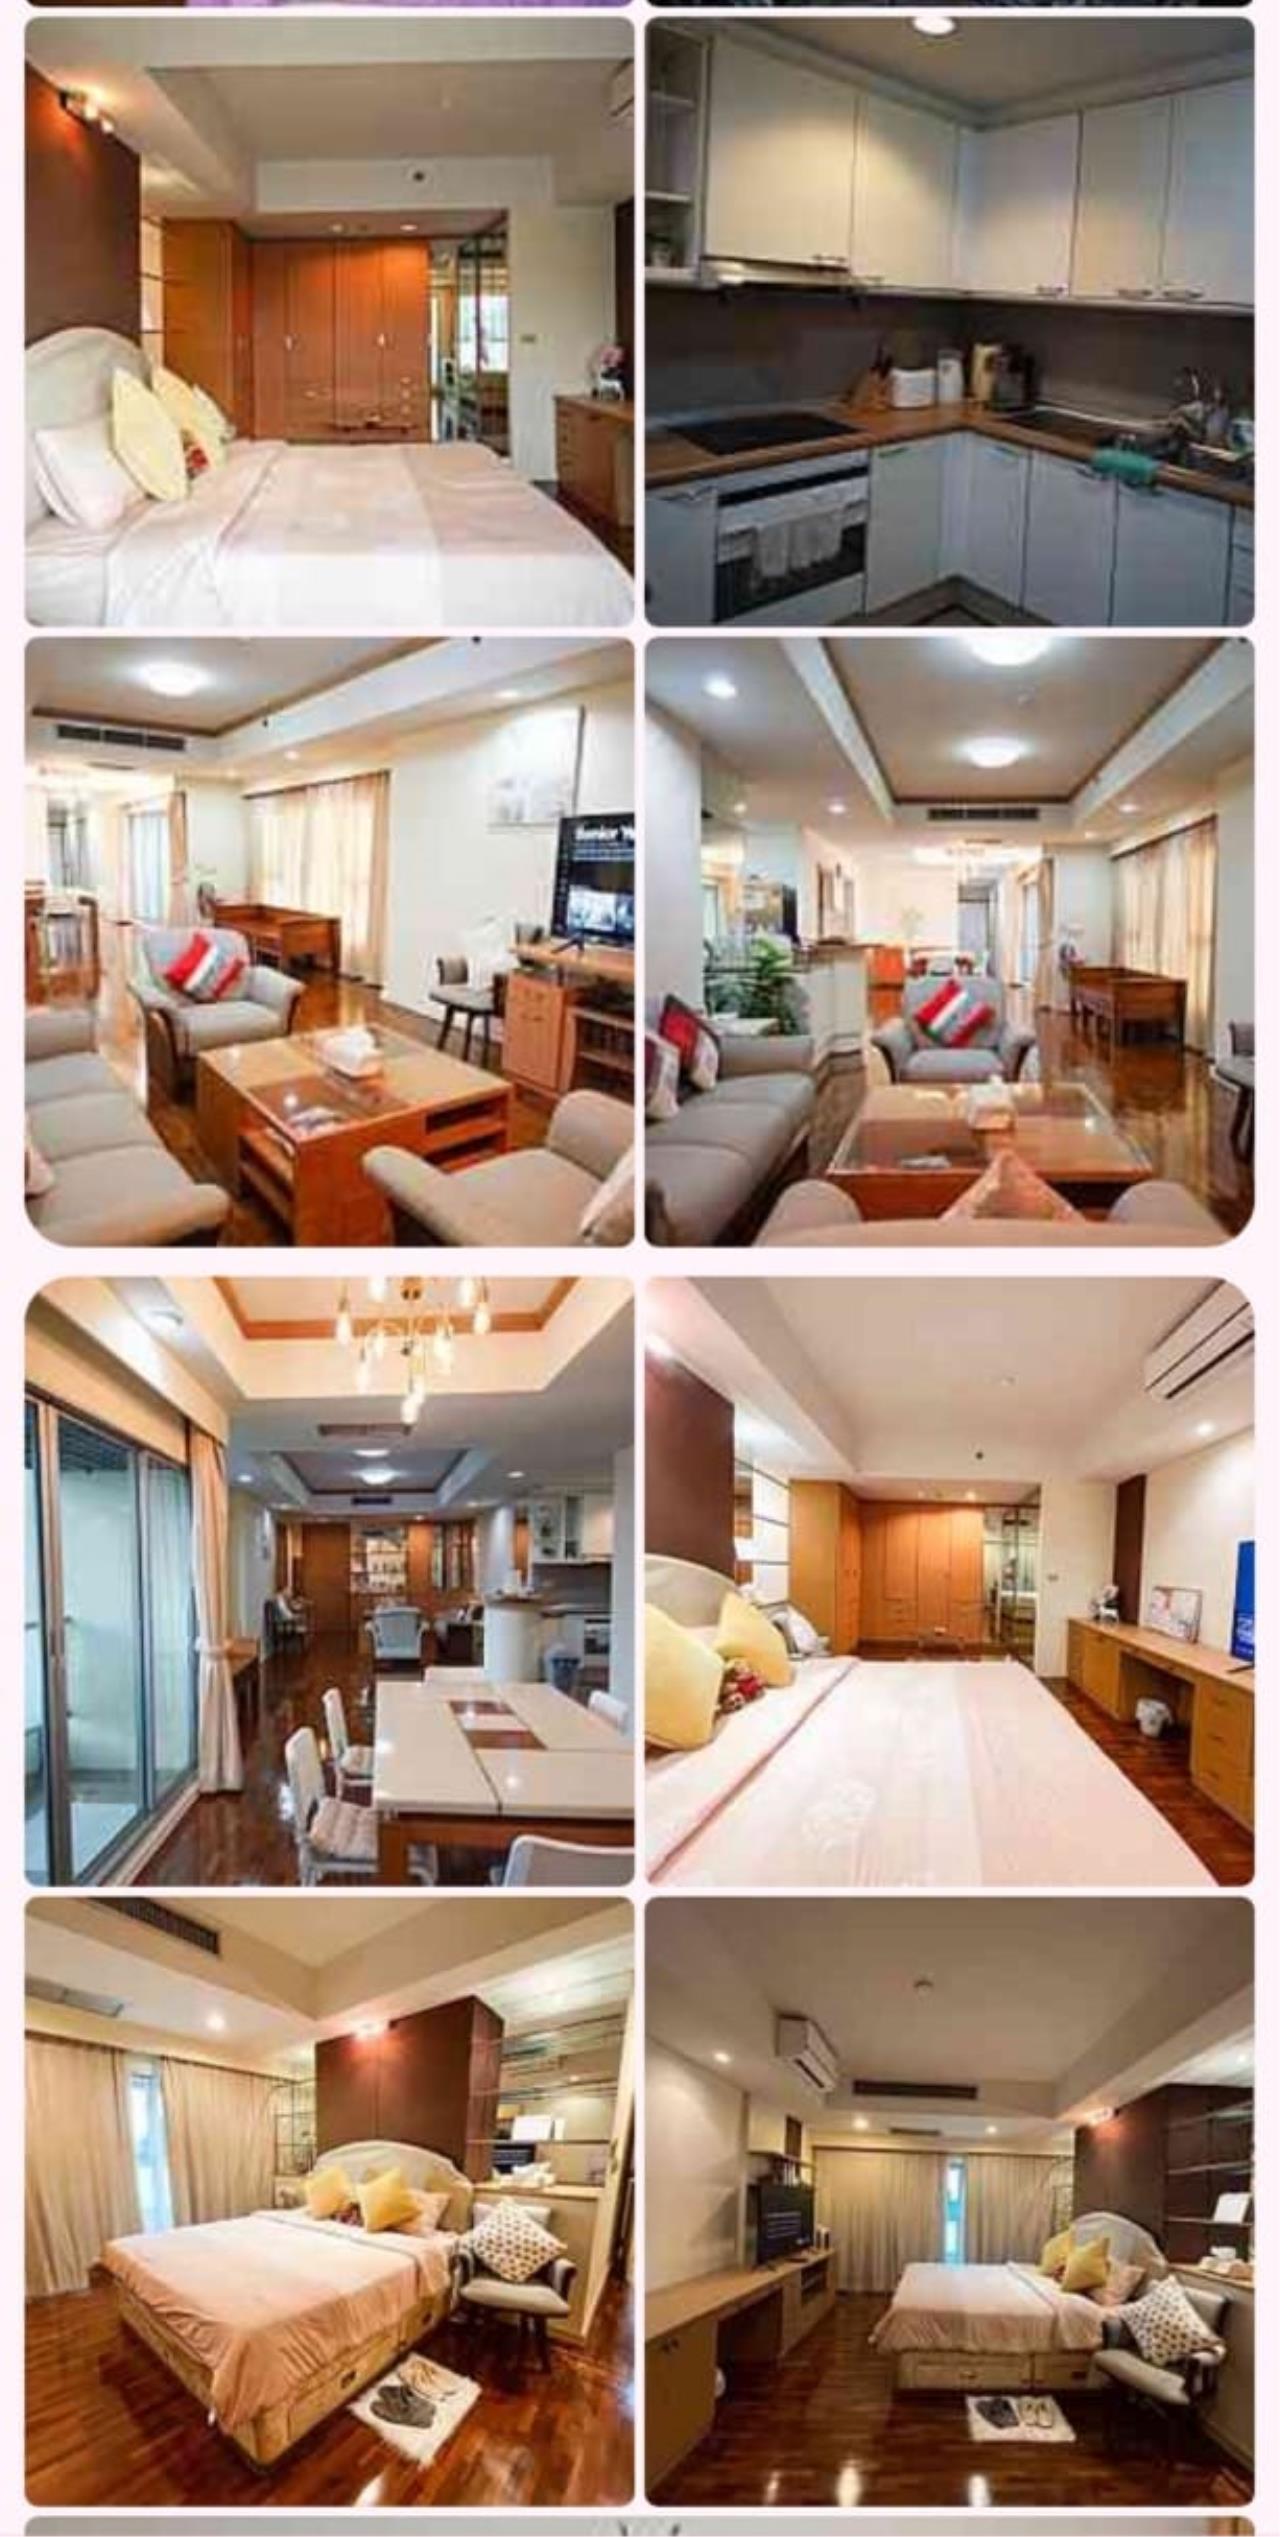 3 Bedrooms 3 Bathrooms Size 156sqm. Baan Nonzee Condominium for Rent